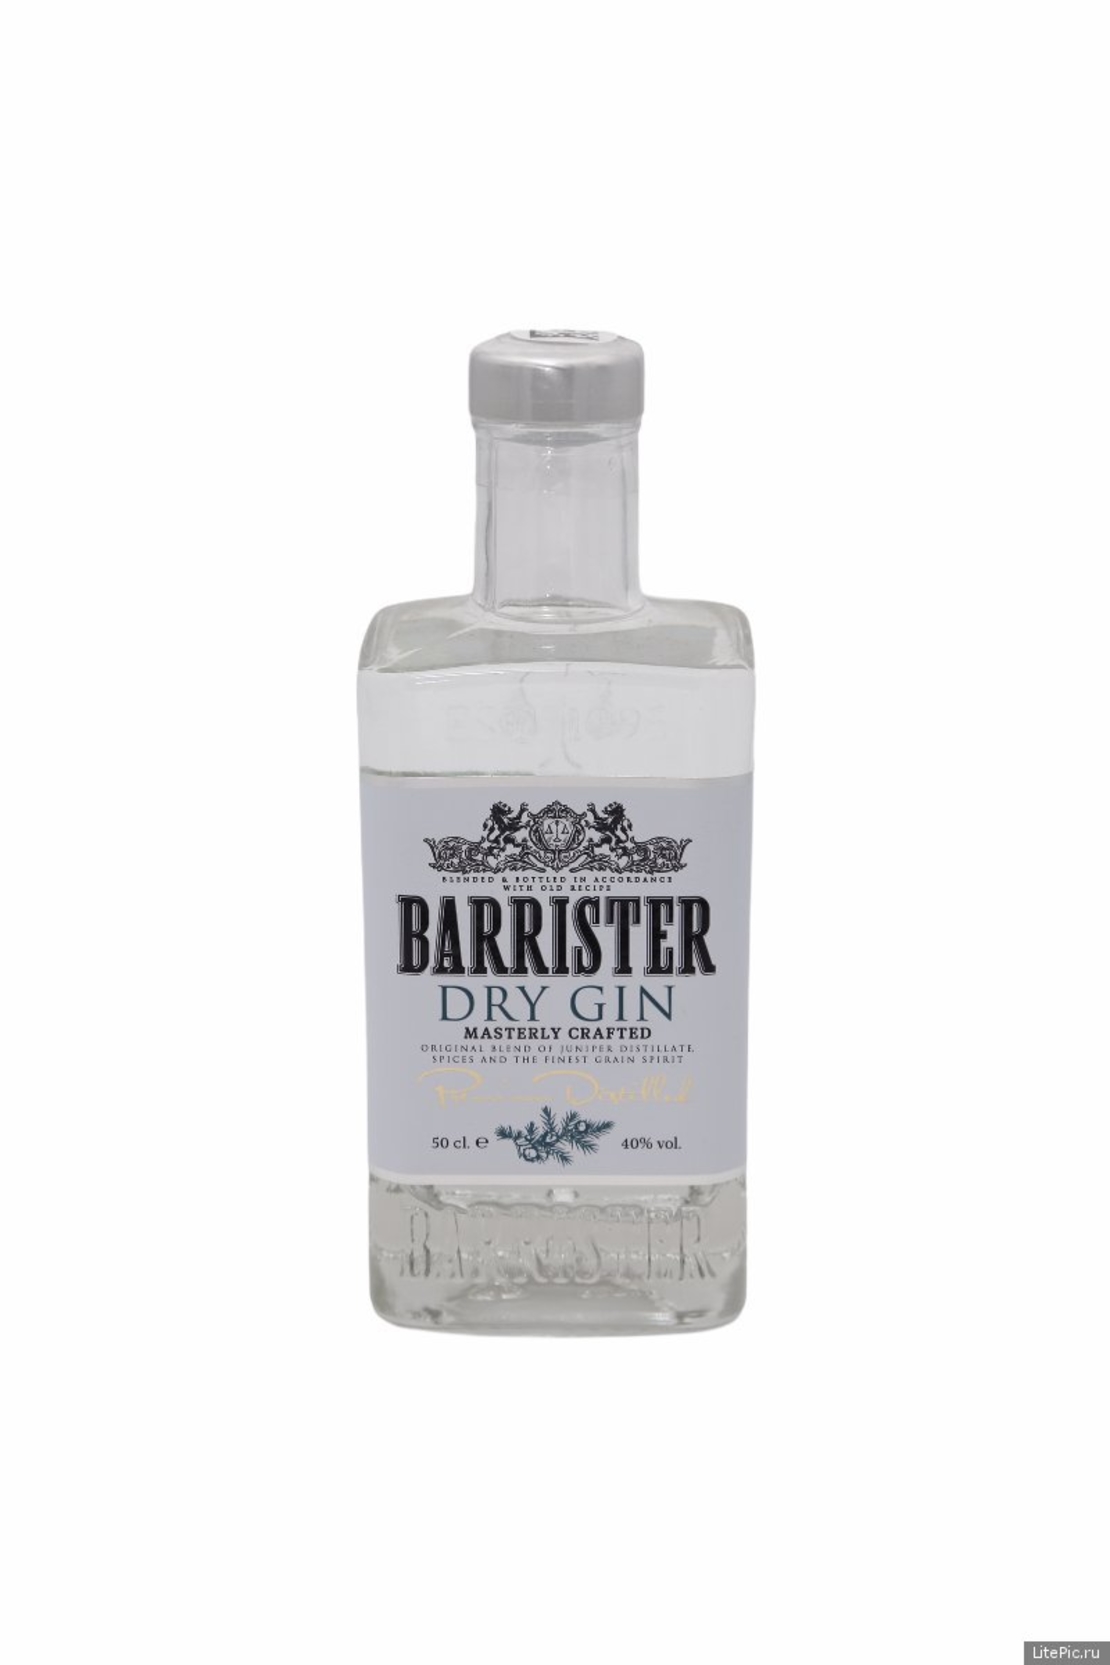 Барристер цена 0.7. Джин Barrister Dry Gin, 0.7 л. Джин Barrister Dry Gin, 0.5 л. Джин "Barrister Dry (Барристер драй)" 0,5л 40%. Джин Barrister Dry Gin 40% 0,5 л.